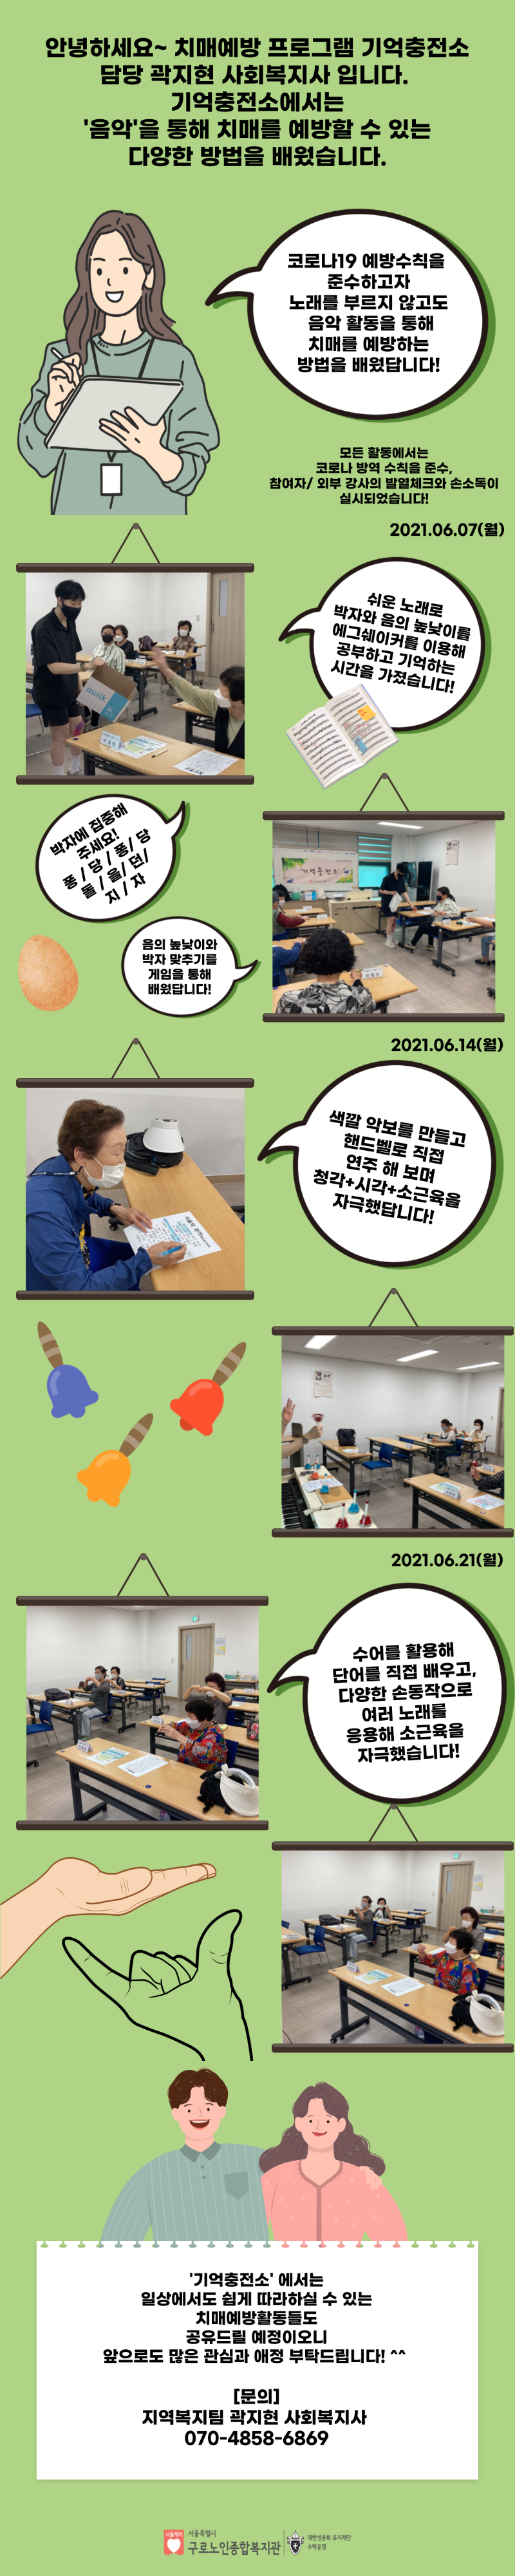 기억충전소 1집단 음악활동(수정).png